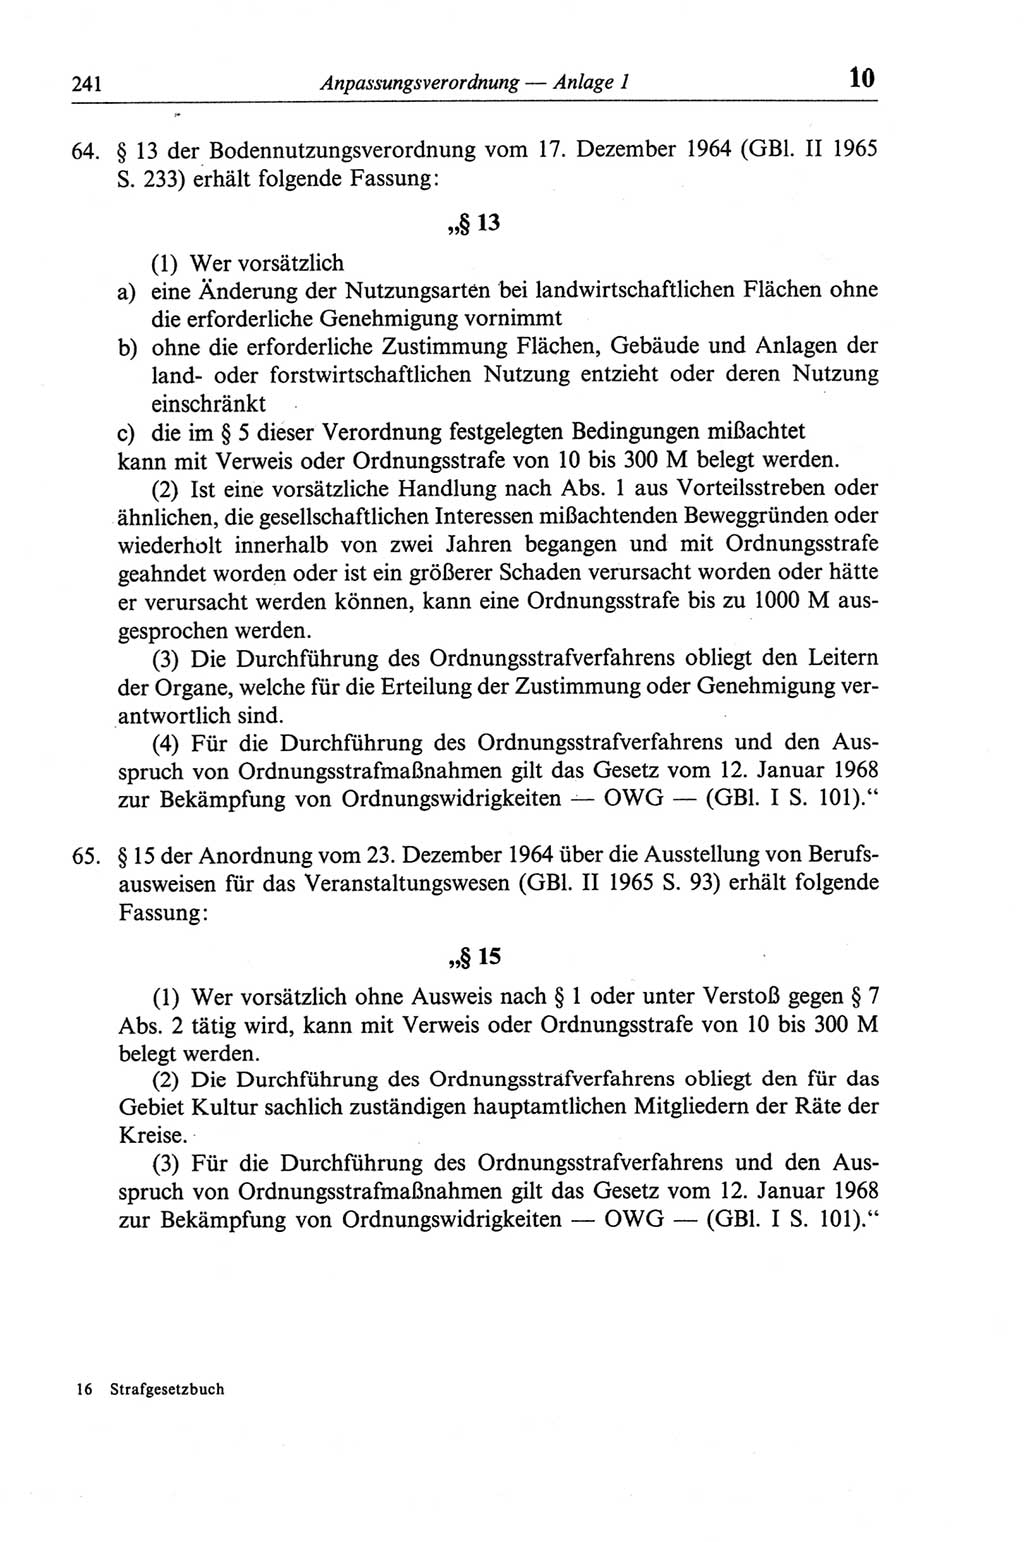 Strafgesetzbuch (StGB) der Deutschen Demokratischen Republik (DDR) und angrenzende Gesetze und Bestimmungen 1968, Seite 241 (StGB Ges. Best. DDR 1968, S. 241)